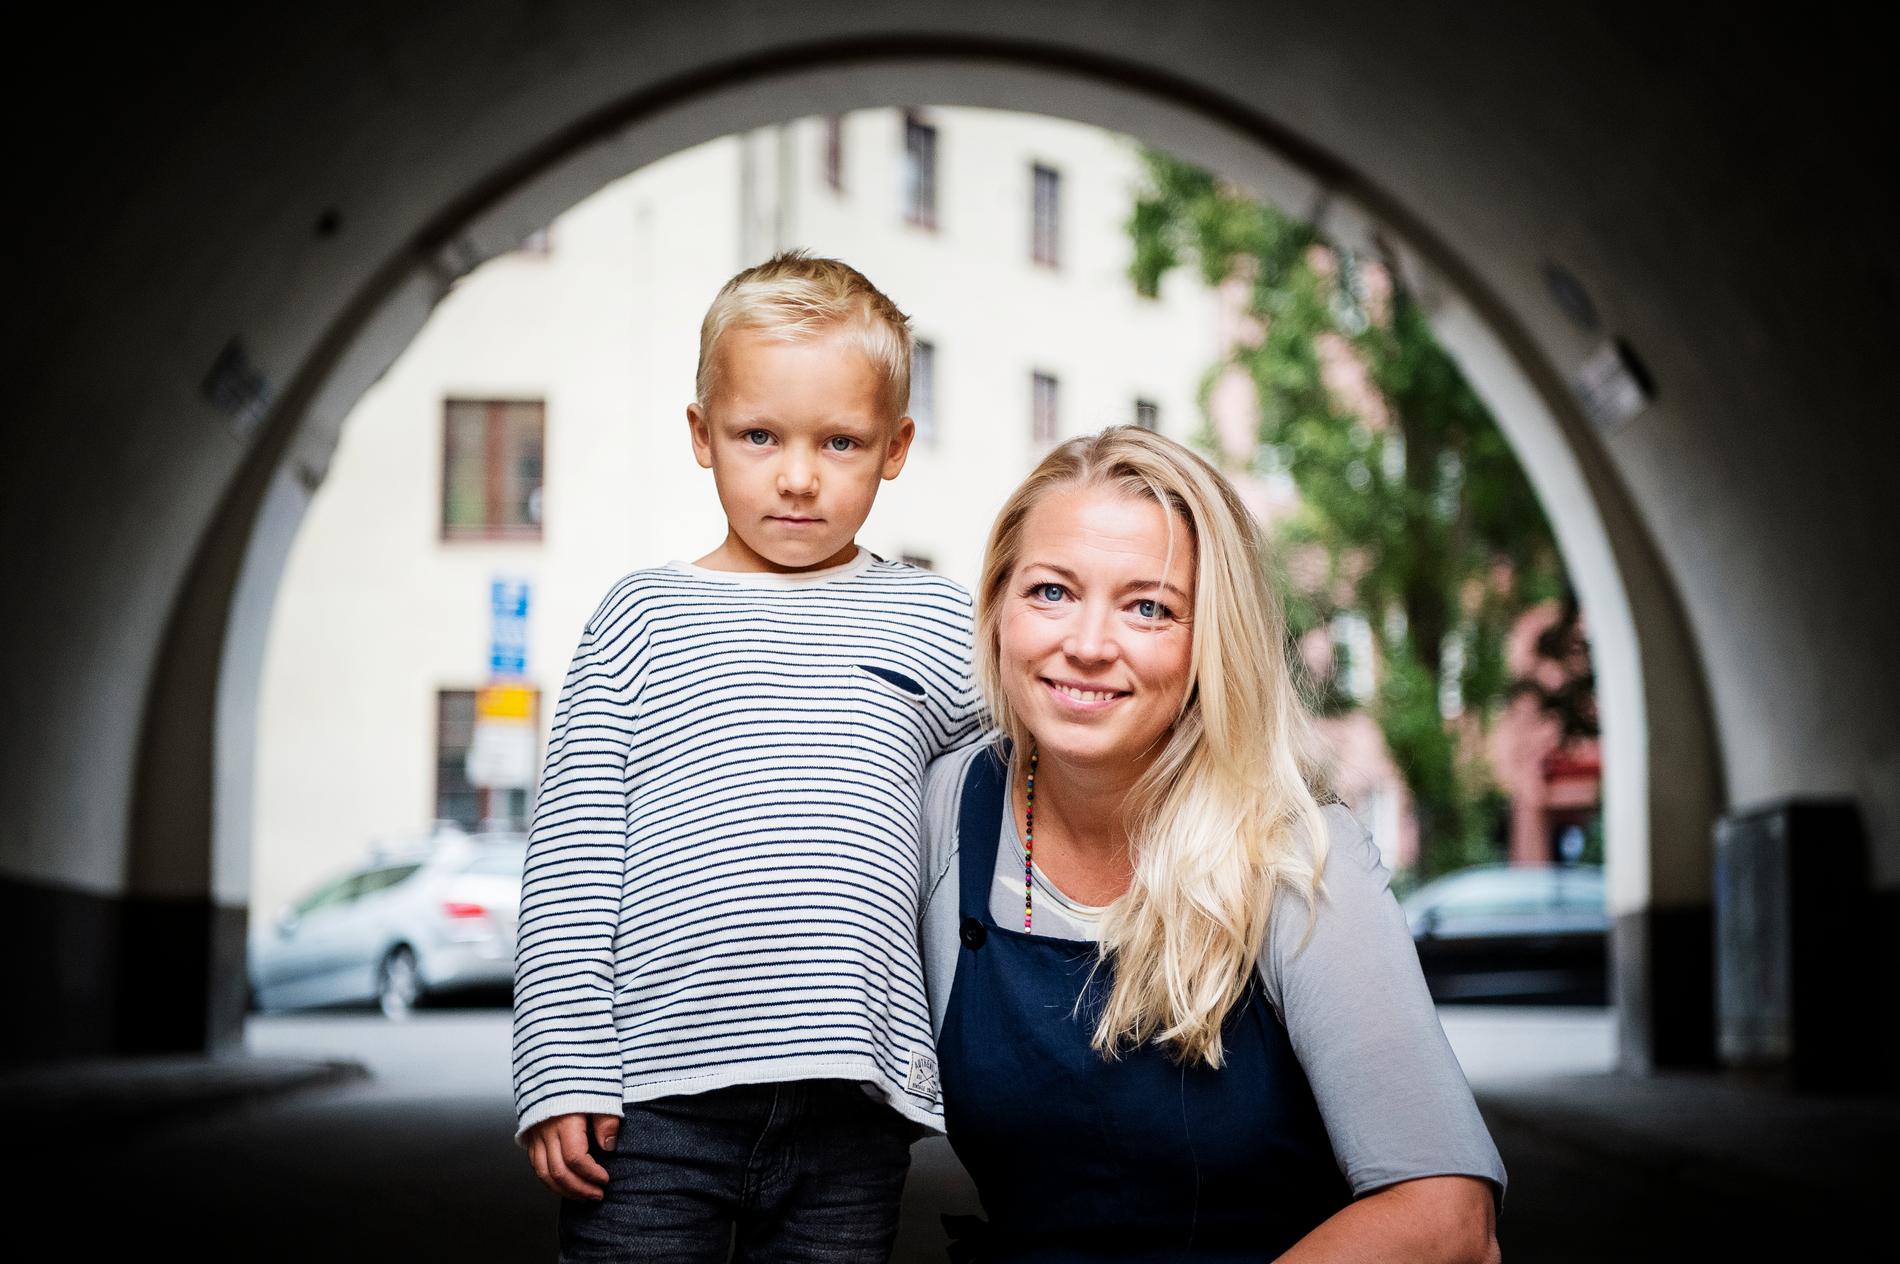 Var tredje vecka får 6-åriga Adrian Nystedt nytt blod. ”Jag är så tacksam för alla som räddar liv på ett så enkelt sätt som att ge blod”, säger mamma Maria Nystedt.